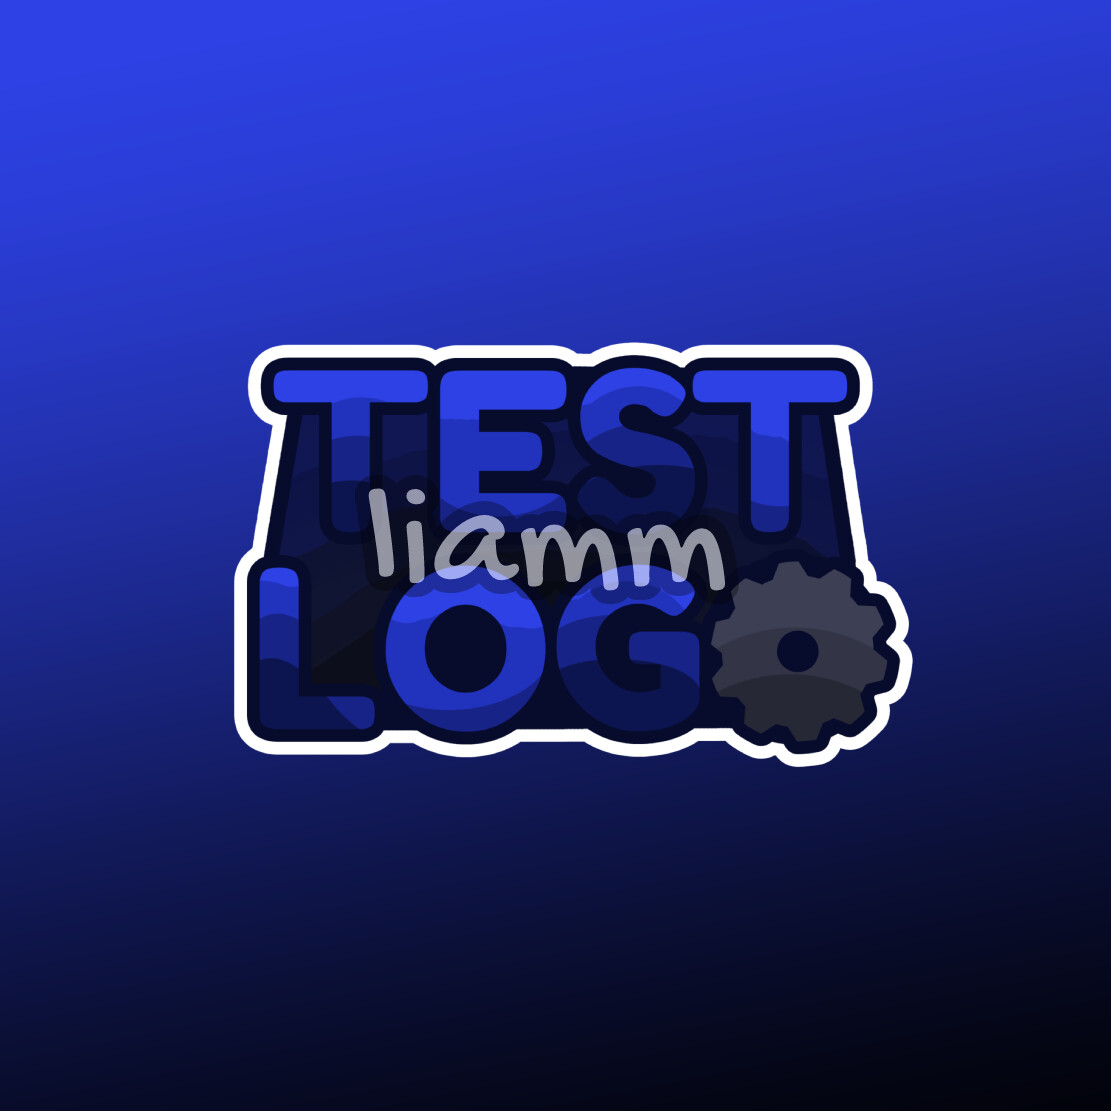 roblox.com library logo test